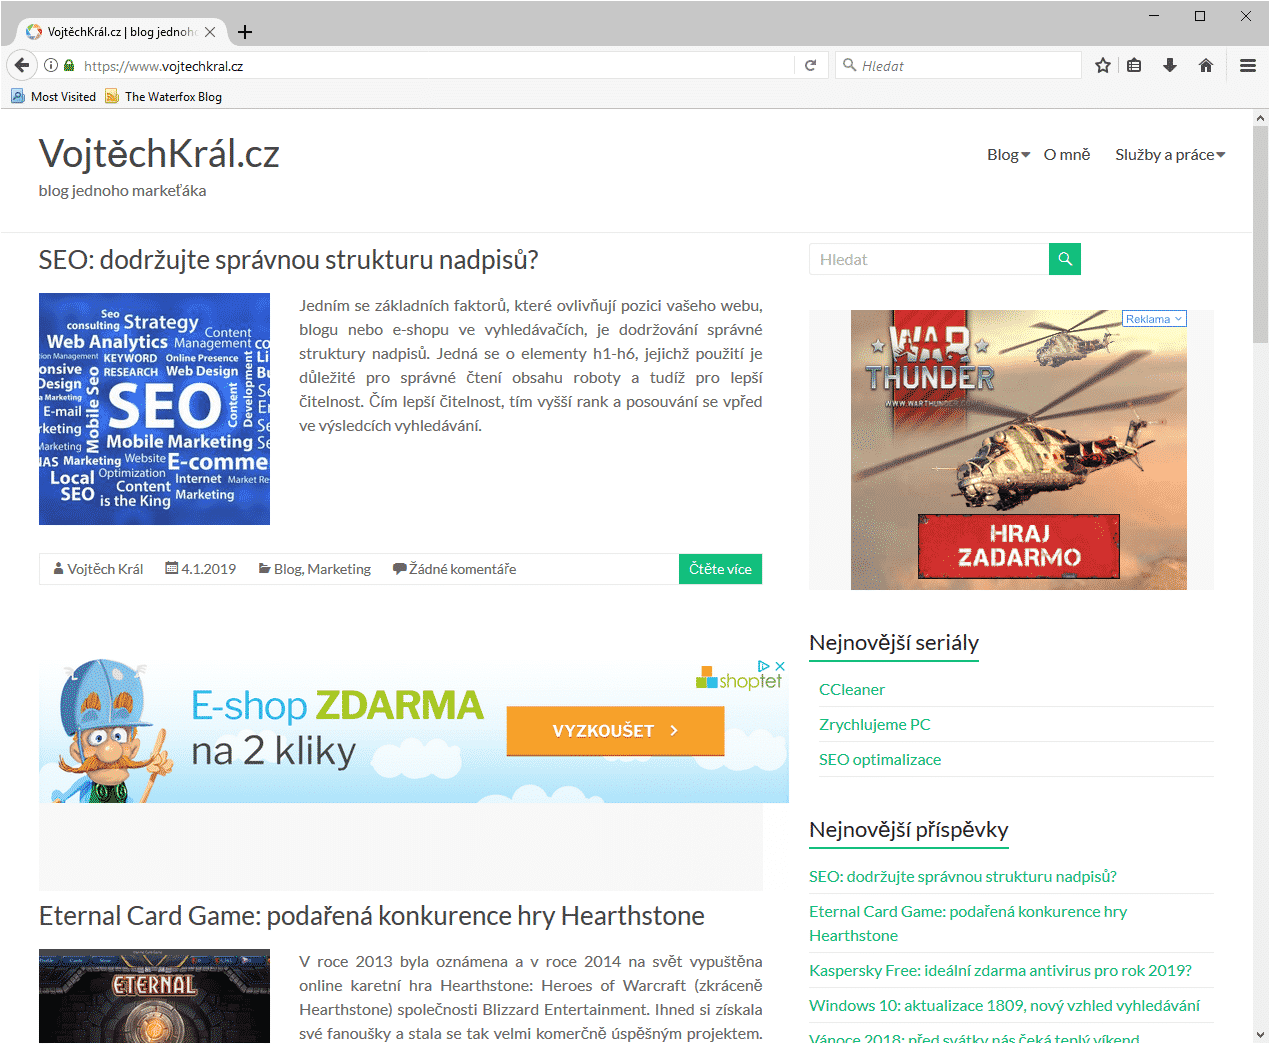 Waterfox, stránka VojtěchKrál.cz